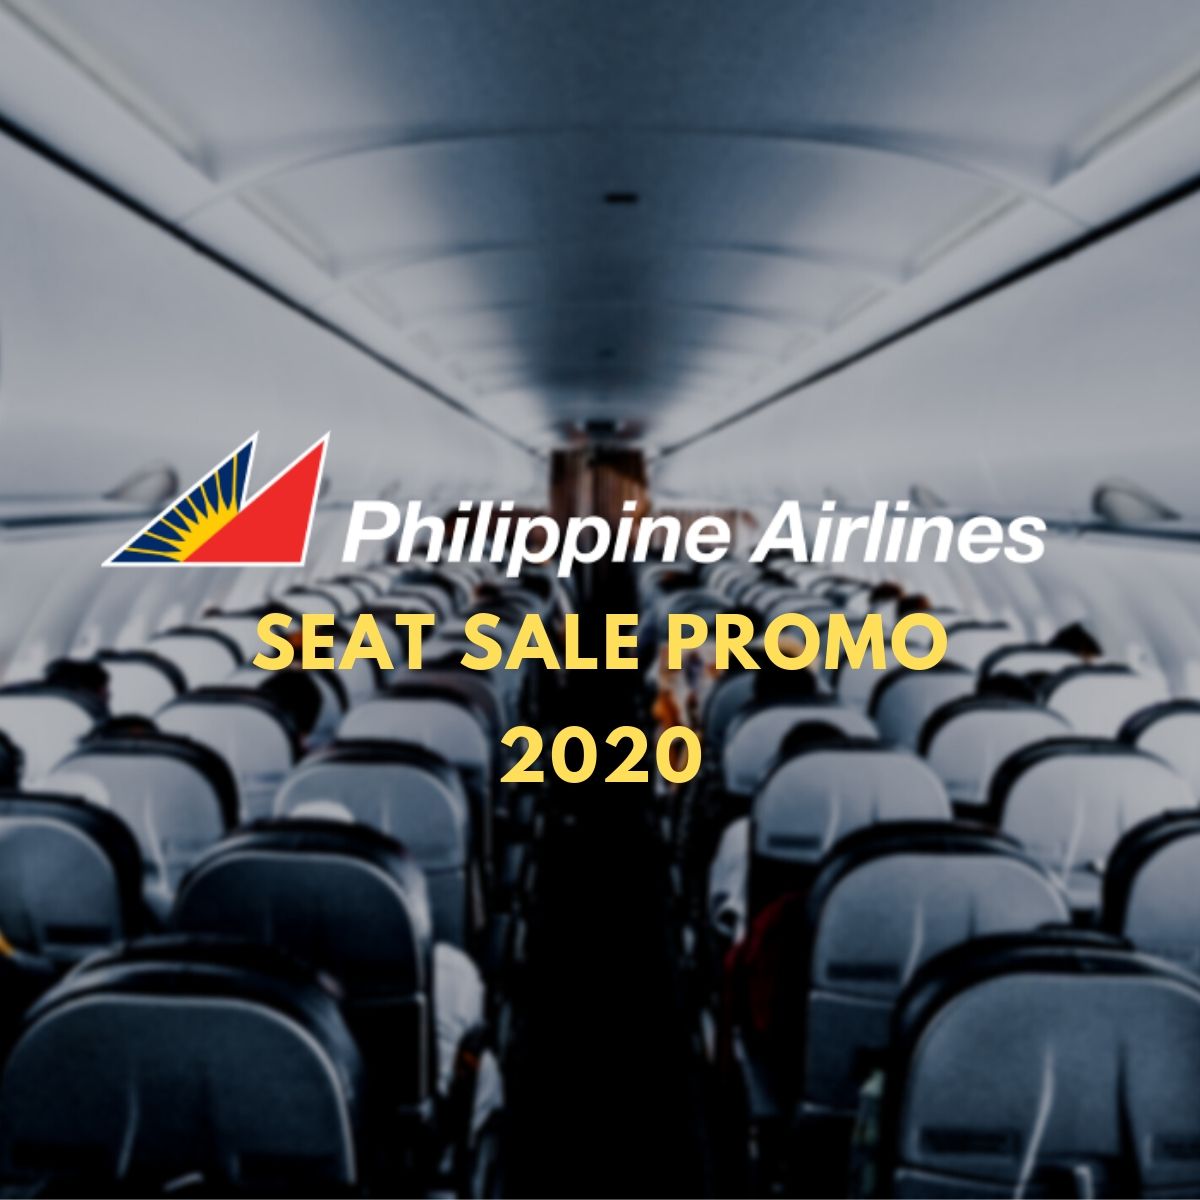 philippine airlines promo 2020